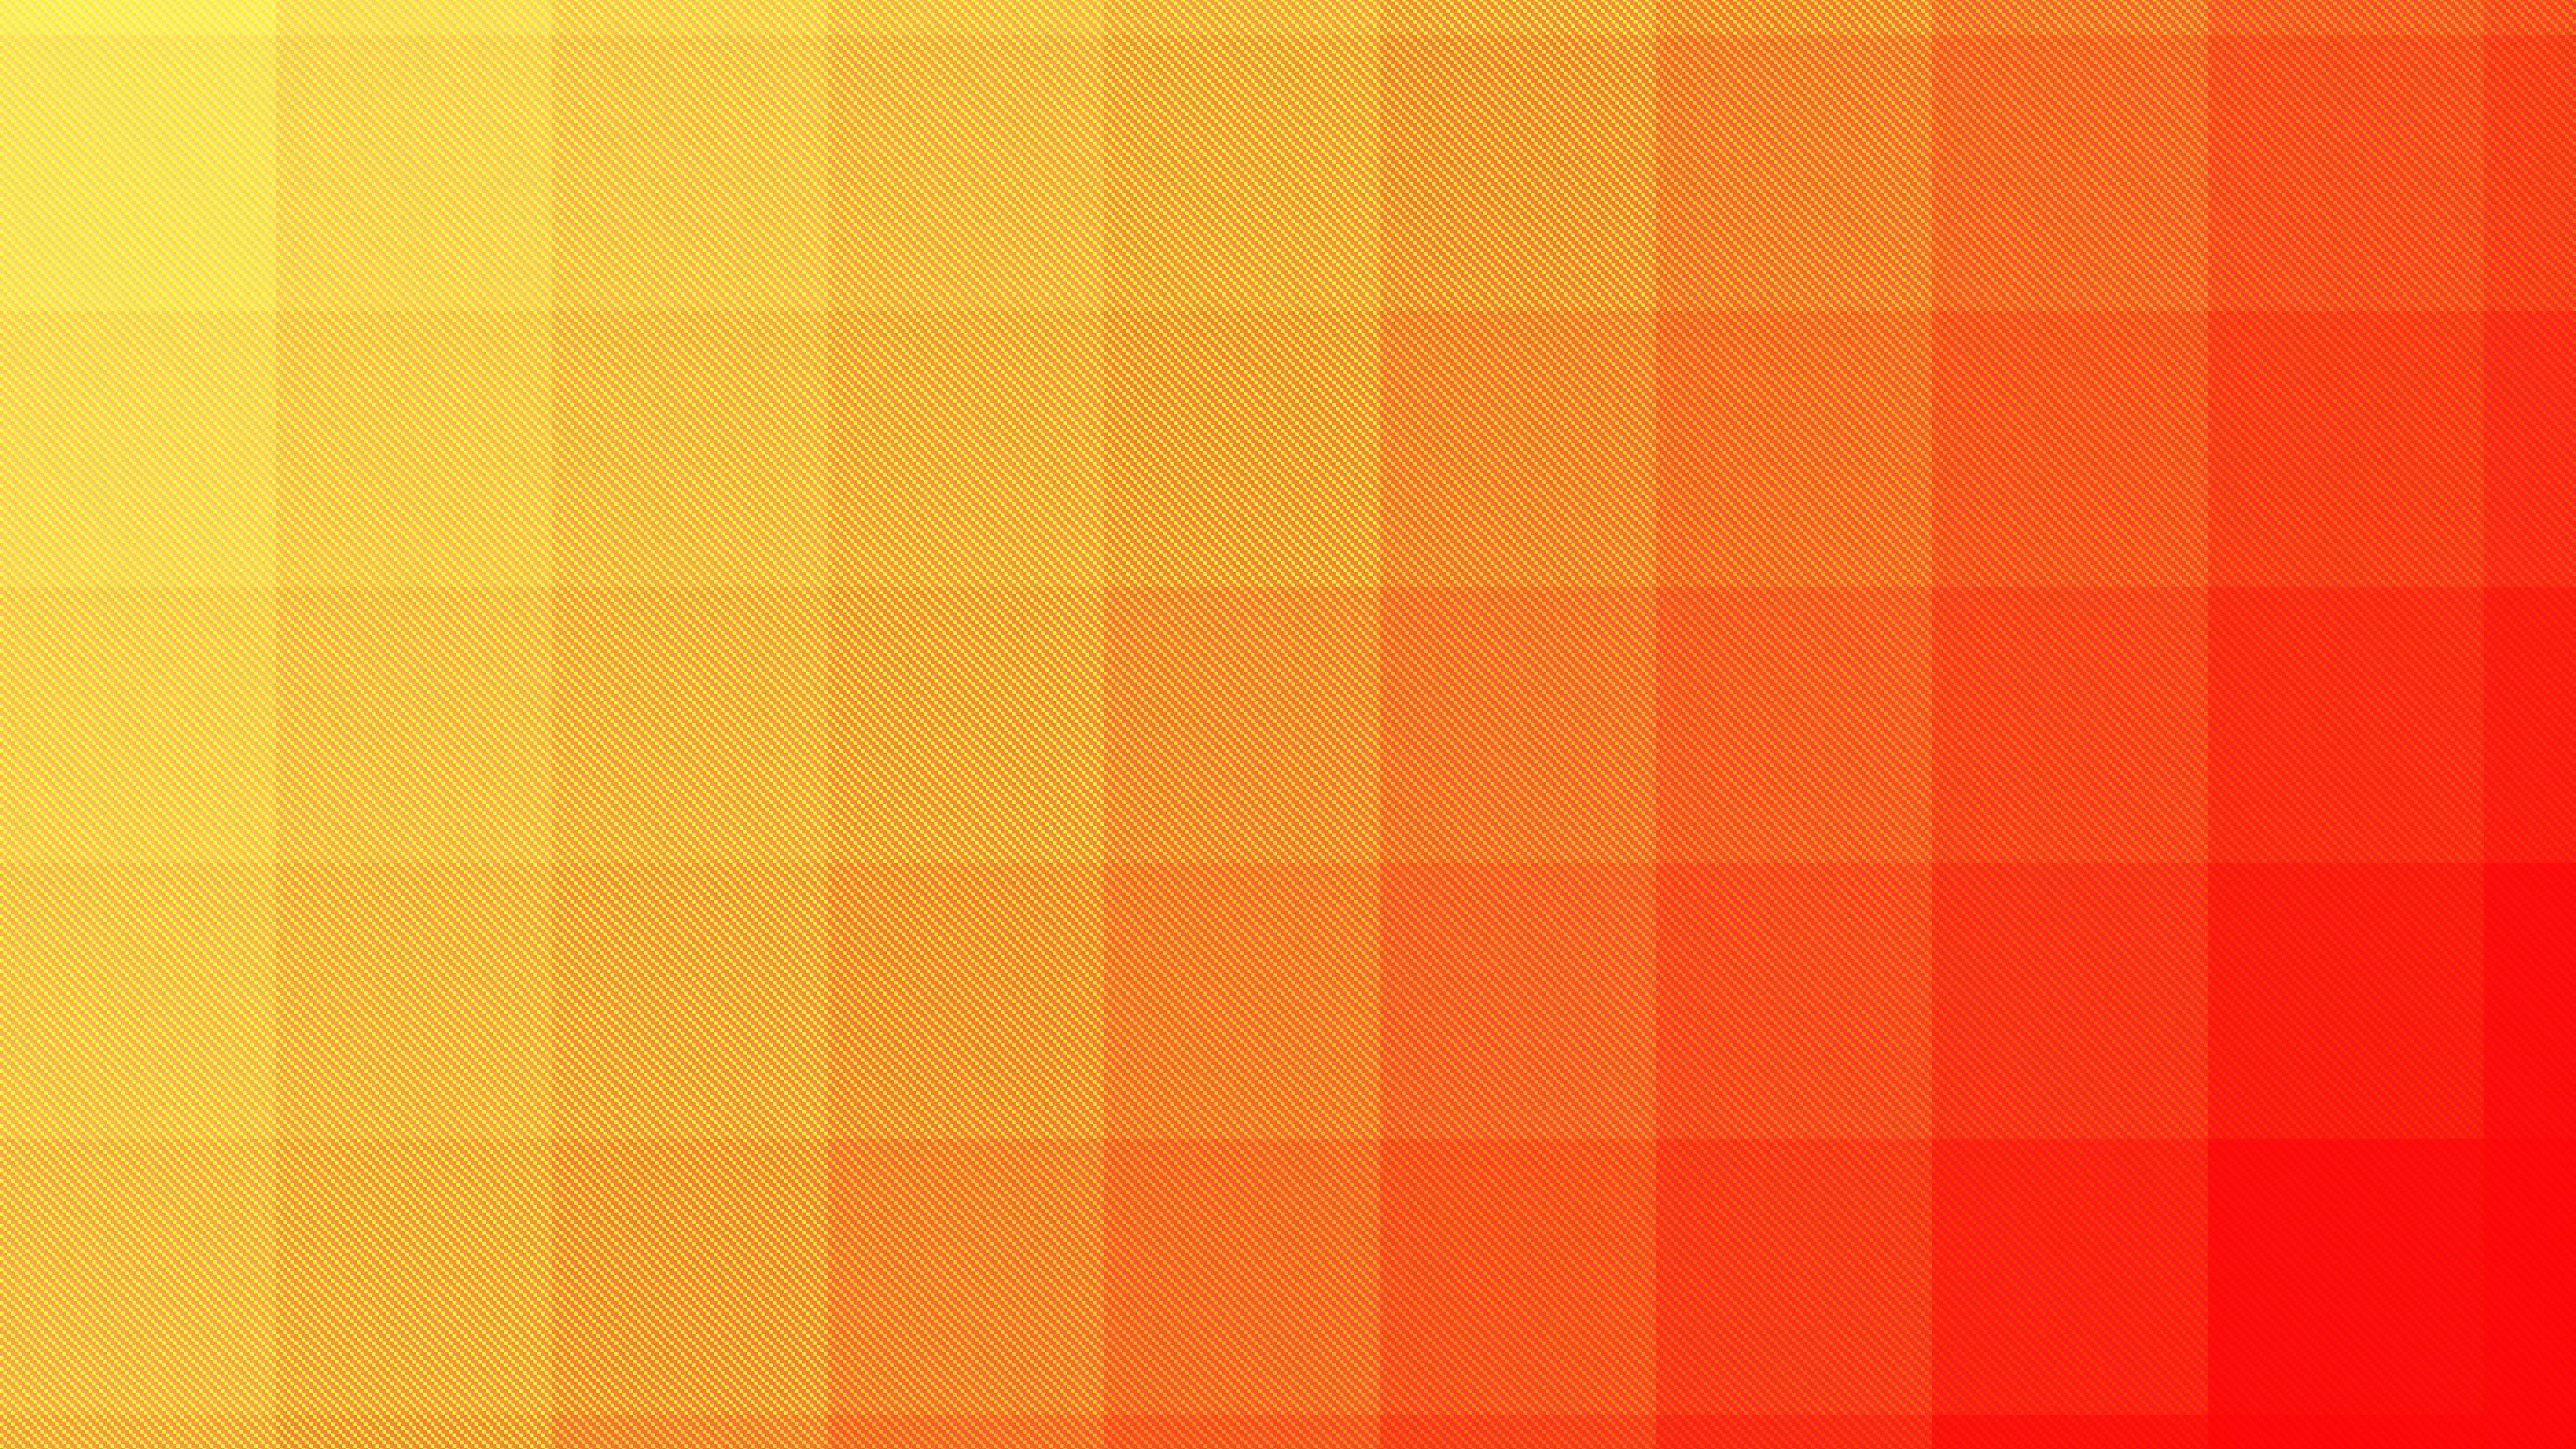 Градиент пиксели. Оранжевый цвет. Желто-оранжевый цвет. Ярко оранжевый. Ярко оранжевый цвет.